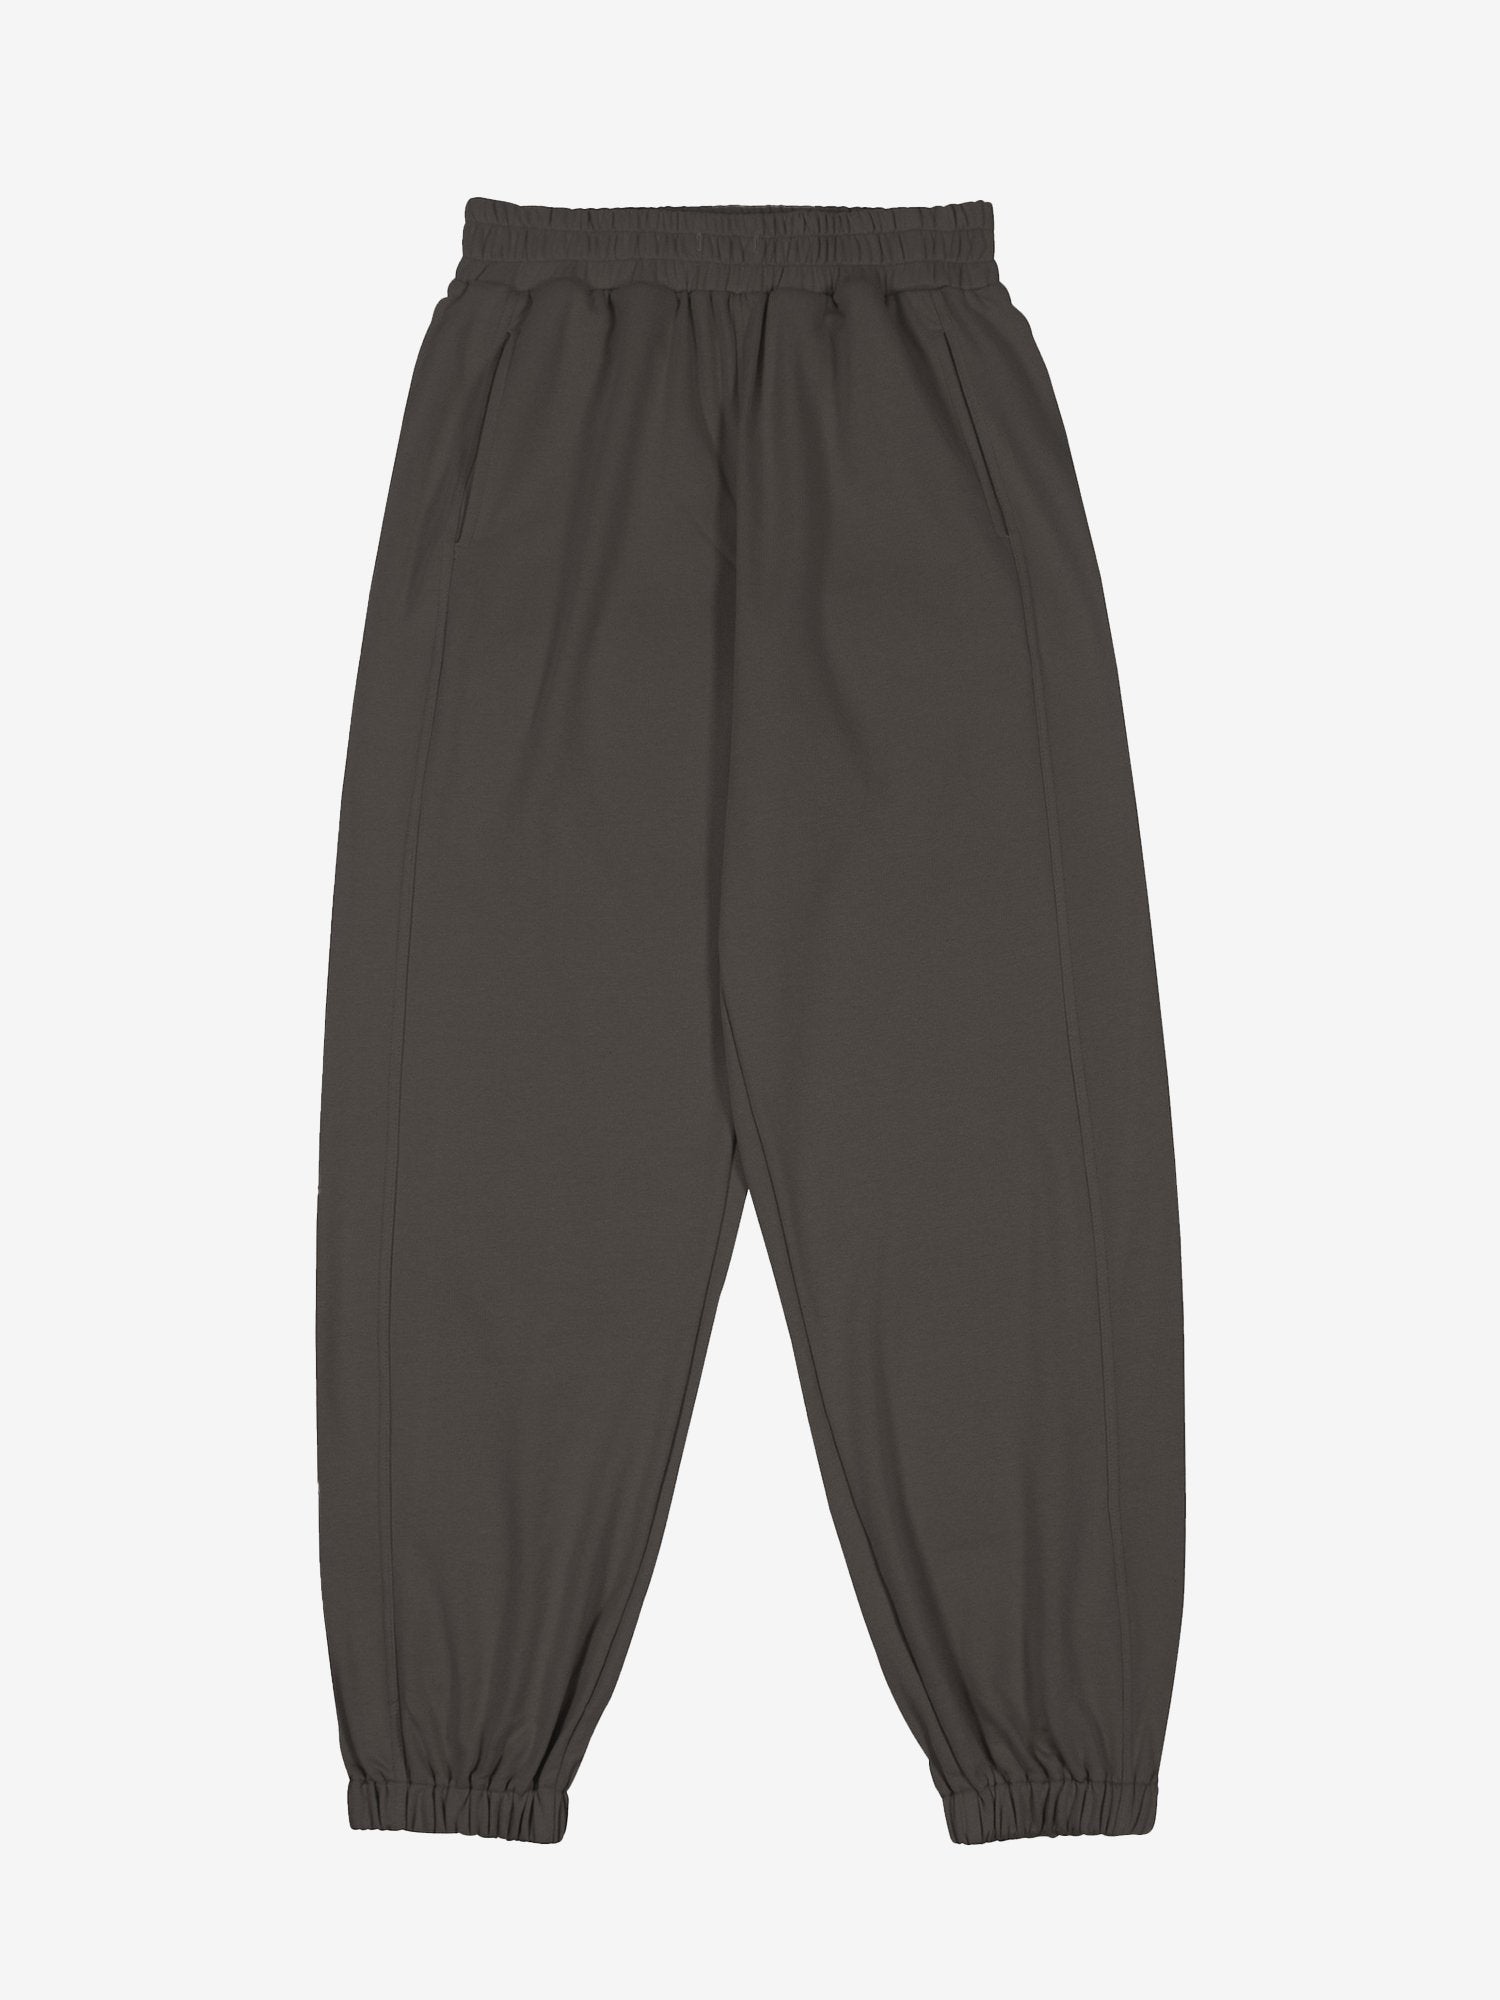 JUSTNOTAG Pantalon de survêtement décontracté à taille élastique en coton uni